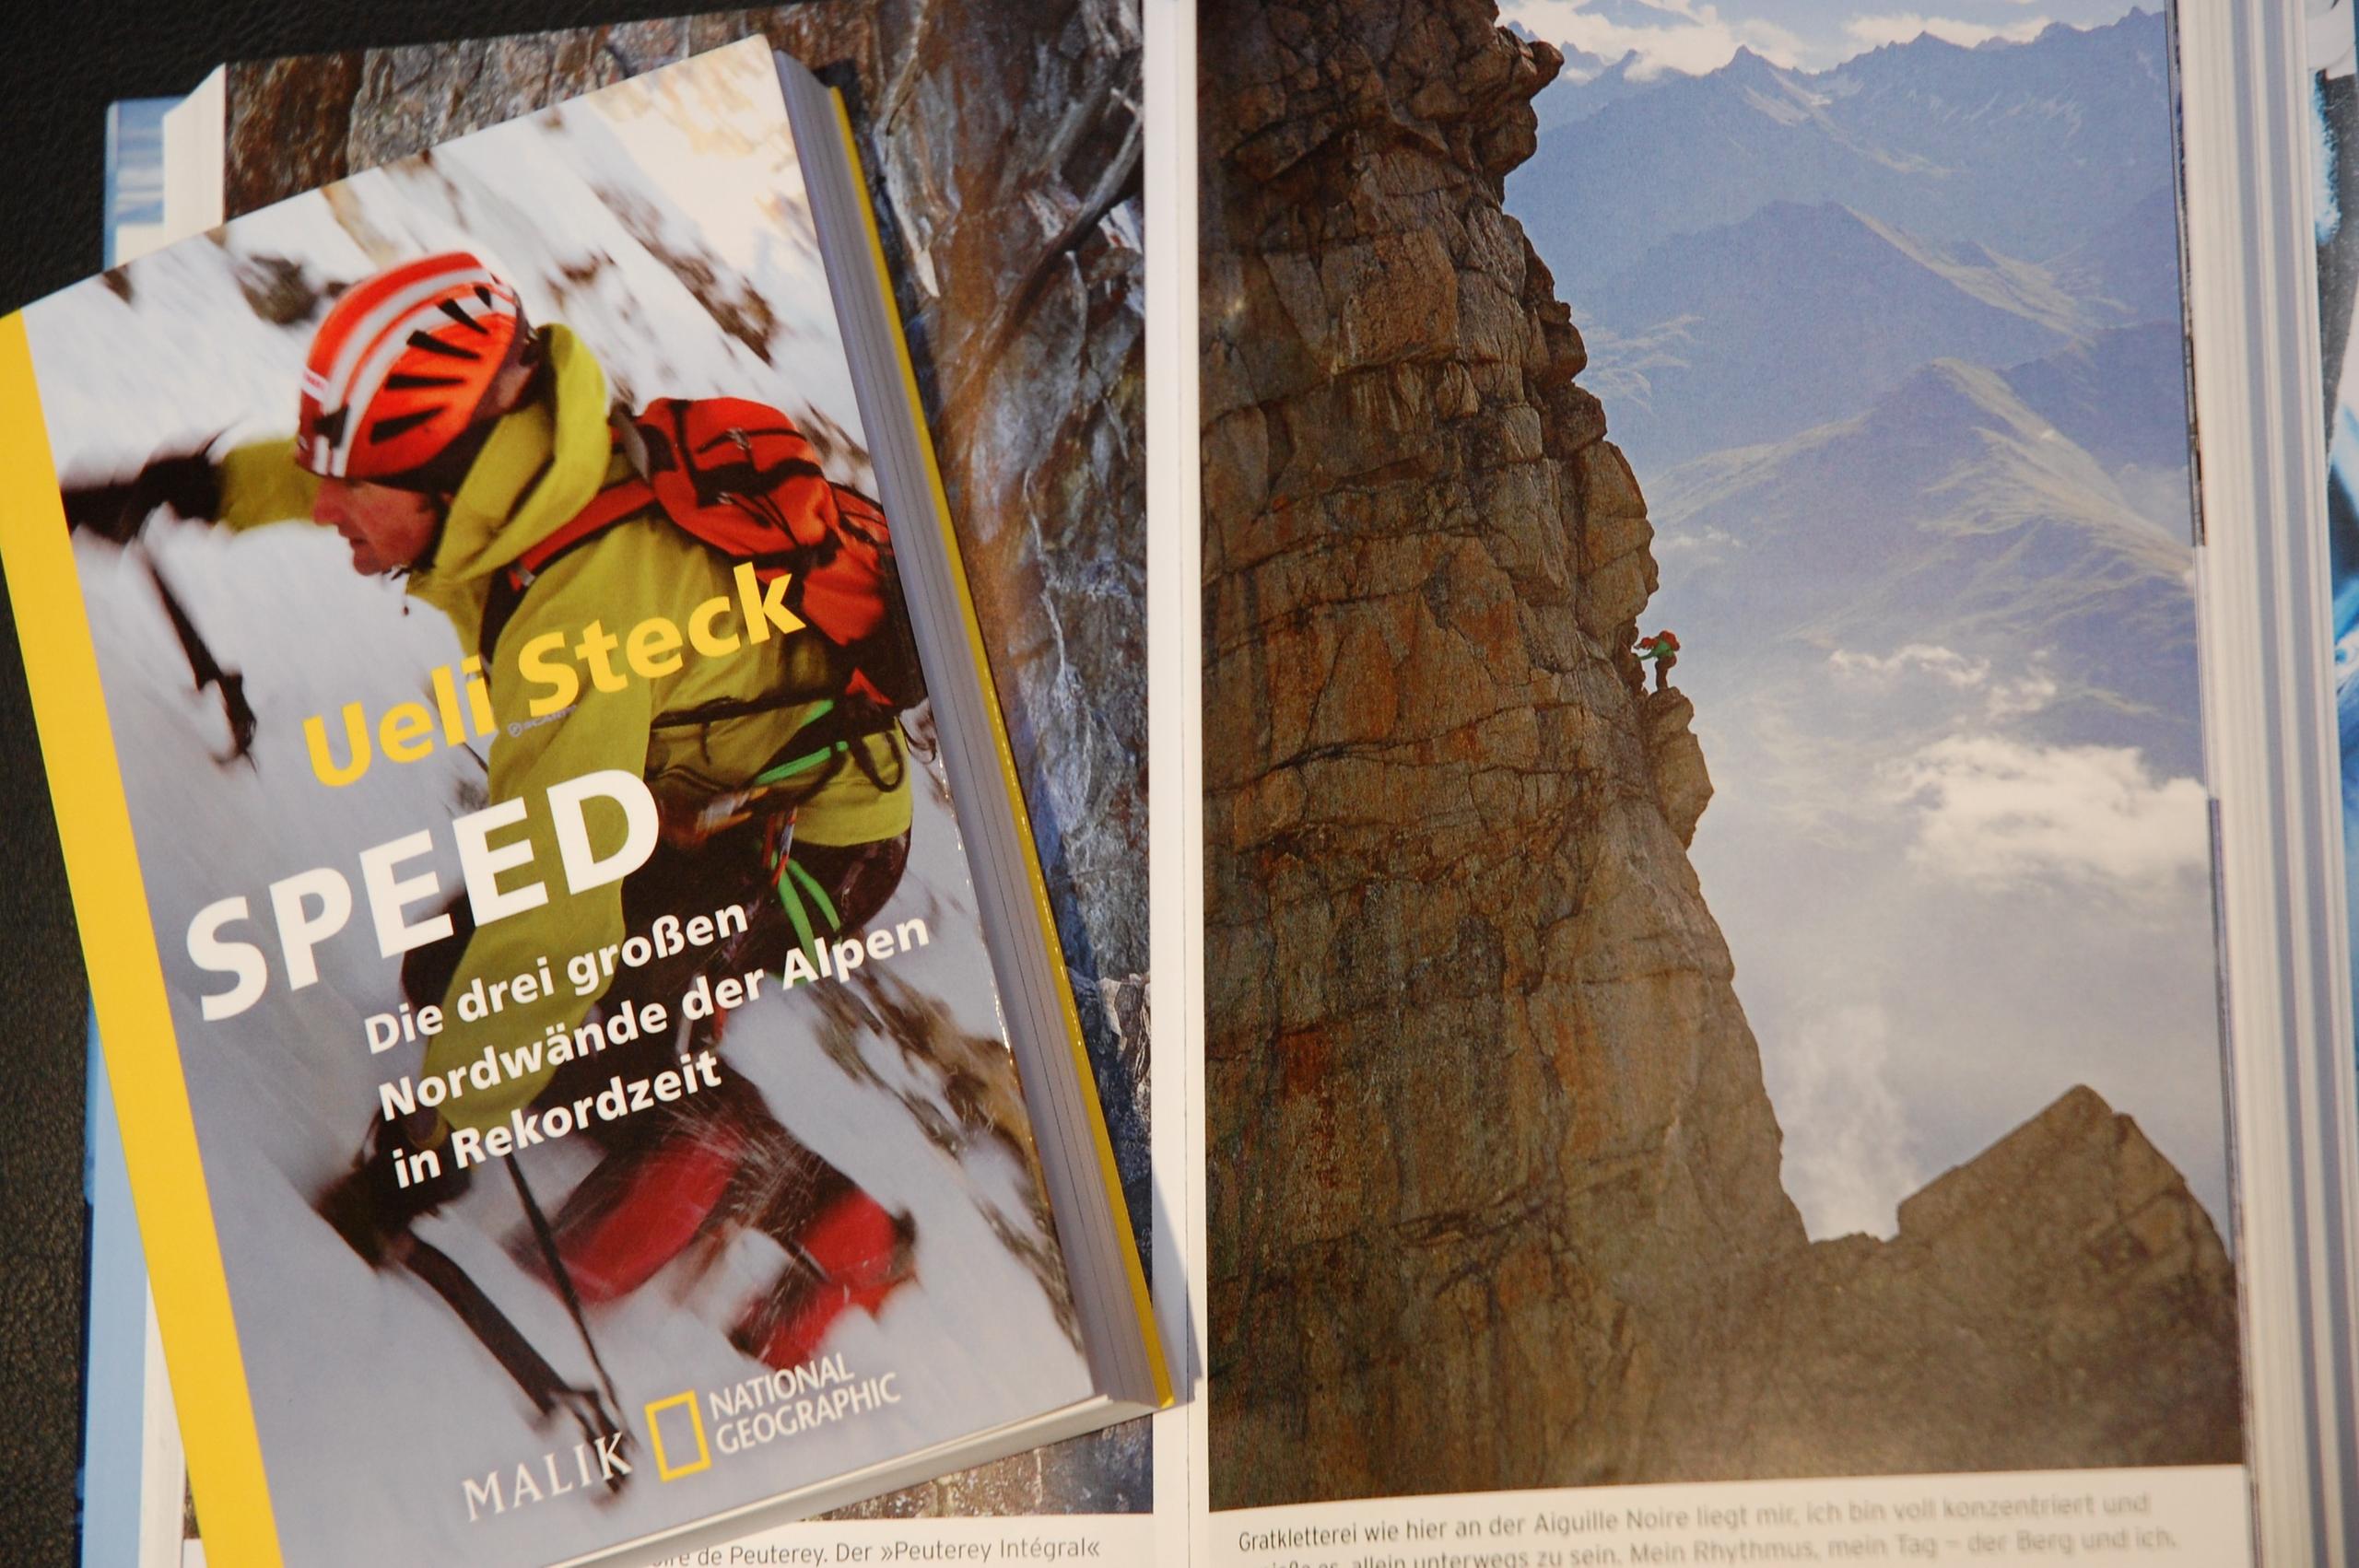 乌里·斯特克的自传《速度：阿尔卑斯三大北壁的世界记录》(2012年)，《下一步:每座山都让我改变》(2016年)